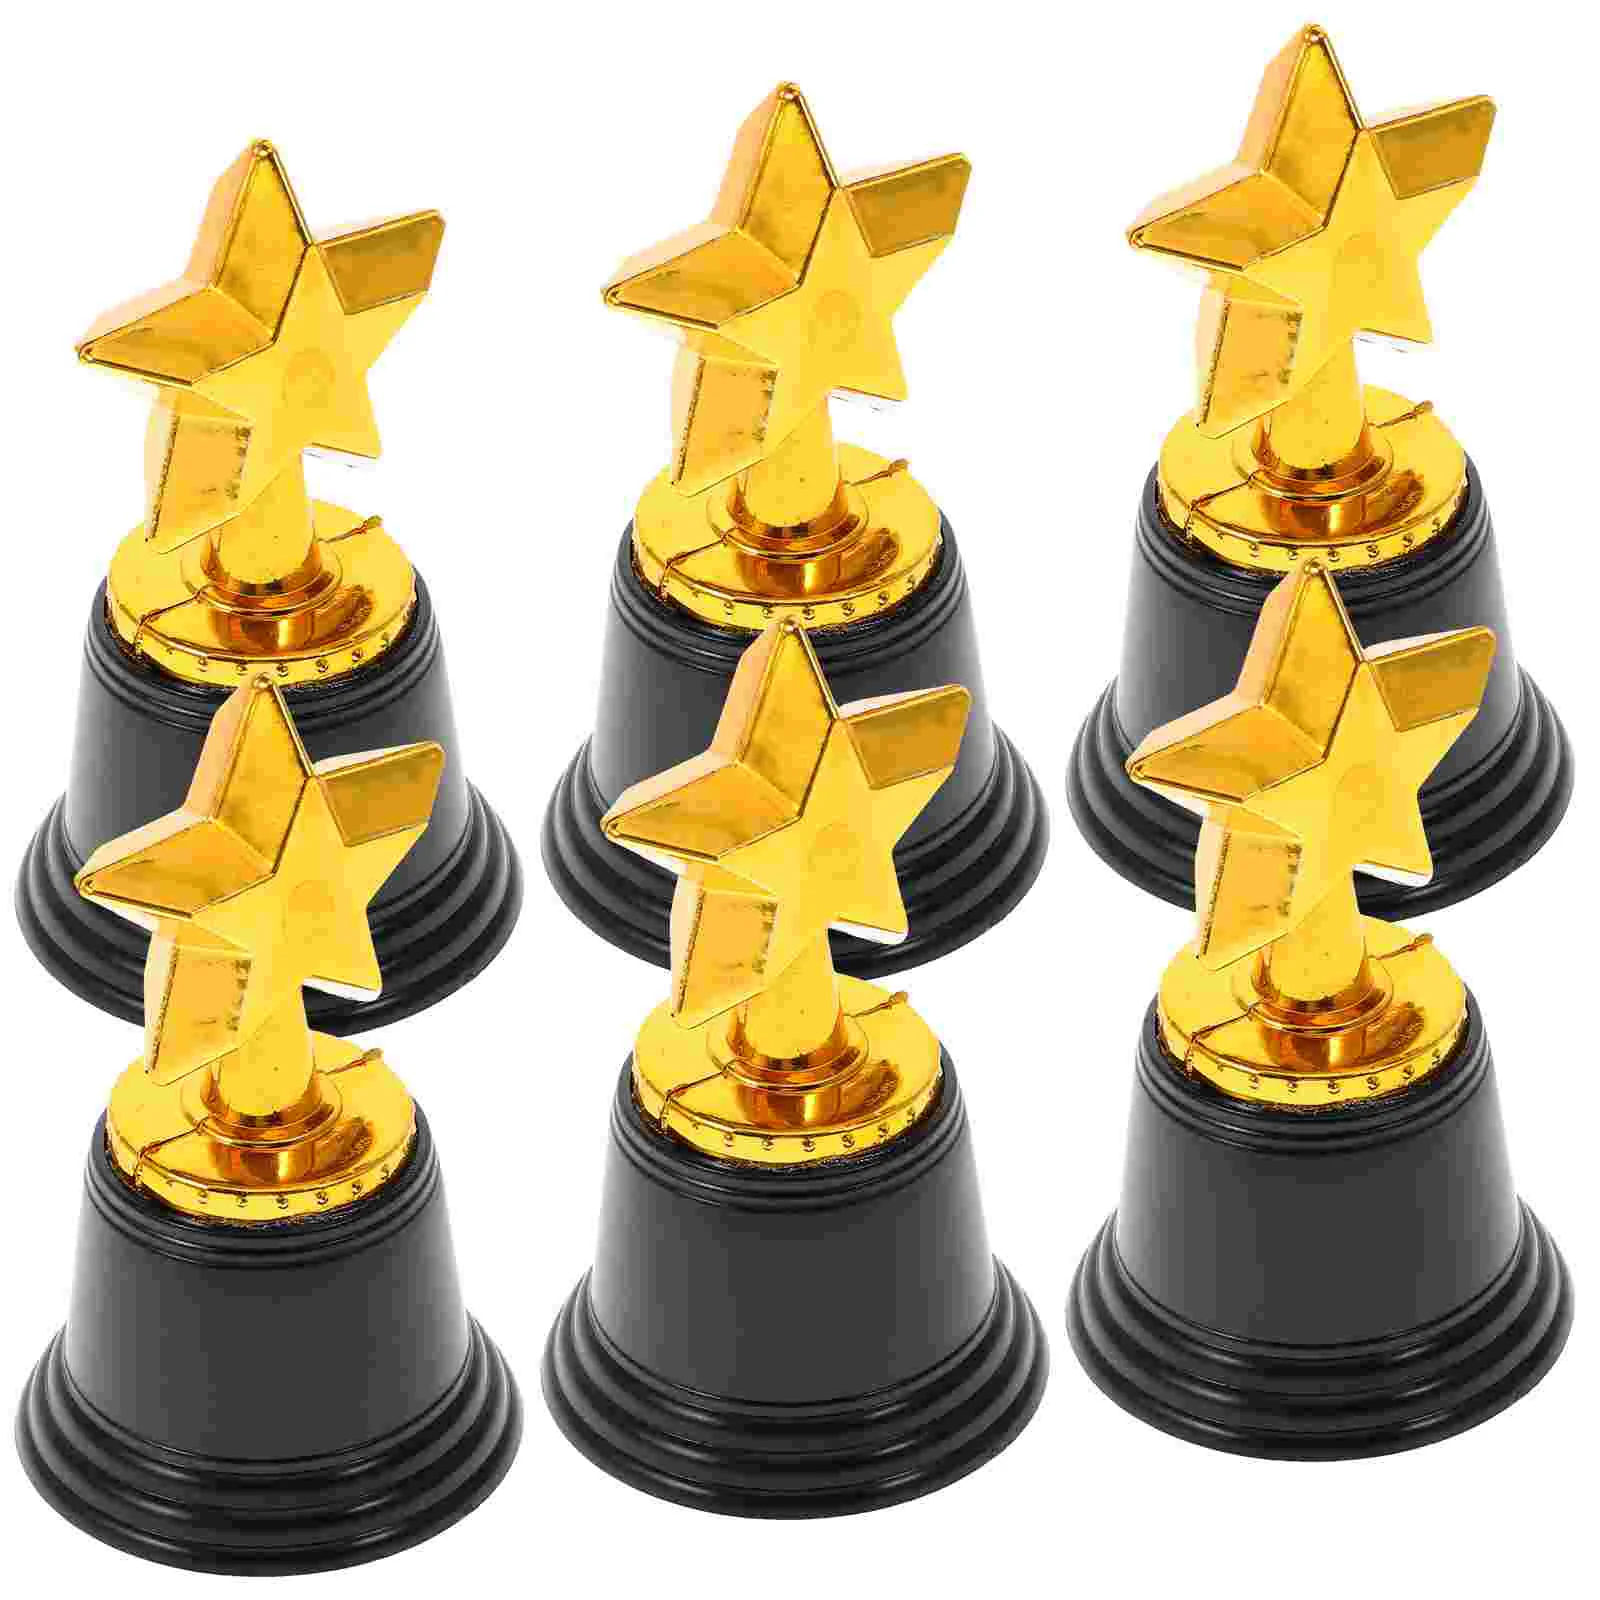 Набор наград Toyvian Kids Toys Star Trophy 6 Объемных золотых наградных трофеев размером 4,8 дюйма, Сувениры для детских вечеринок, реквизит, награды за победу